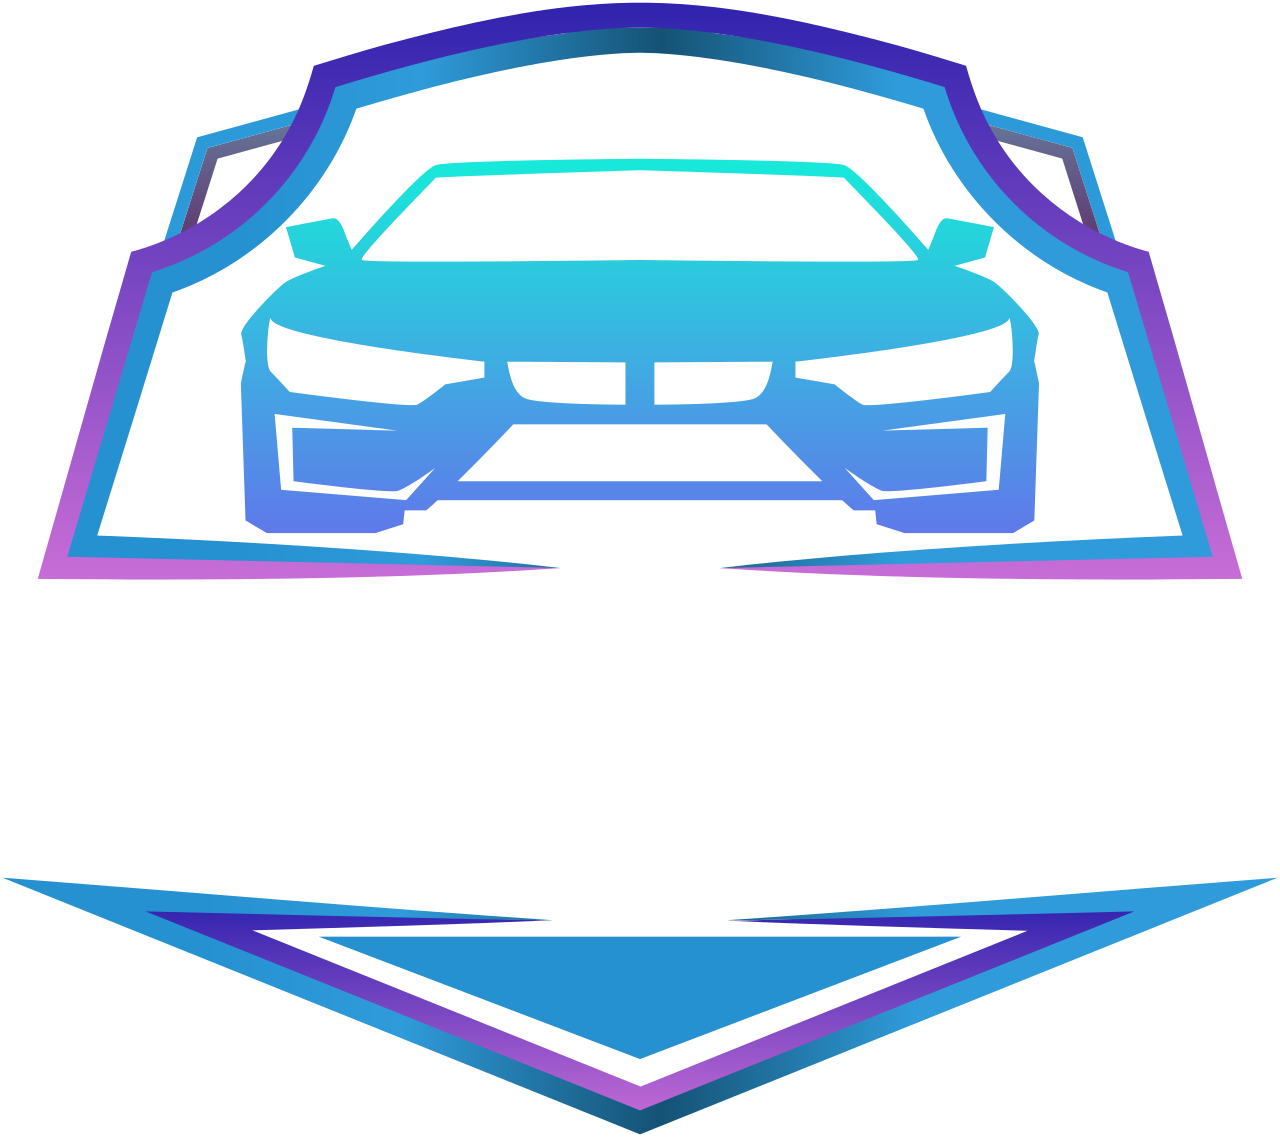 Turbo Auto Detailing's logo